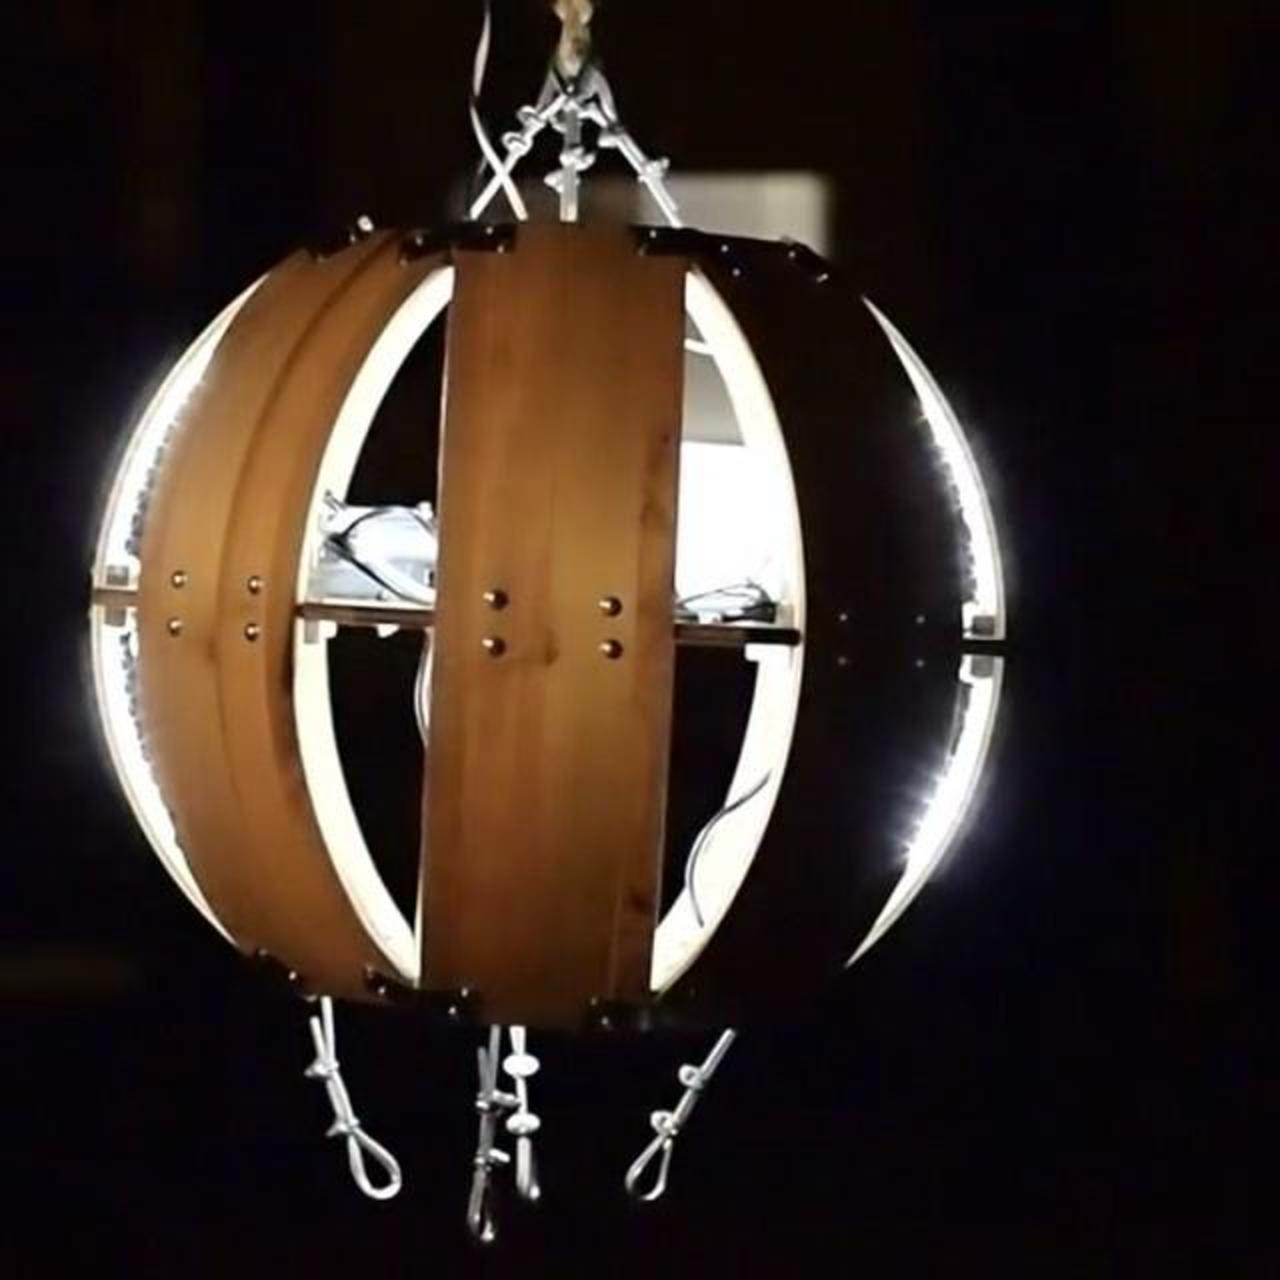 The Living Orb #kinetic #light #sculpture

#kineticart #lightart #led #arduino #make #hang… http://ift.tt/1NgbZSW http://t.co/1AVU0YqQSh